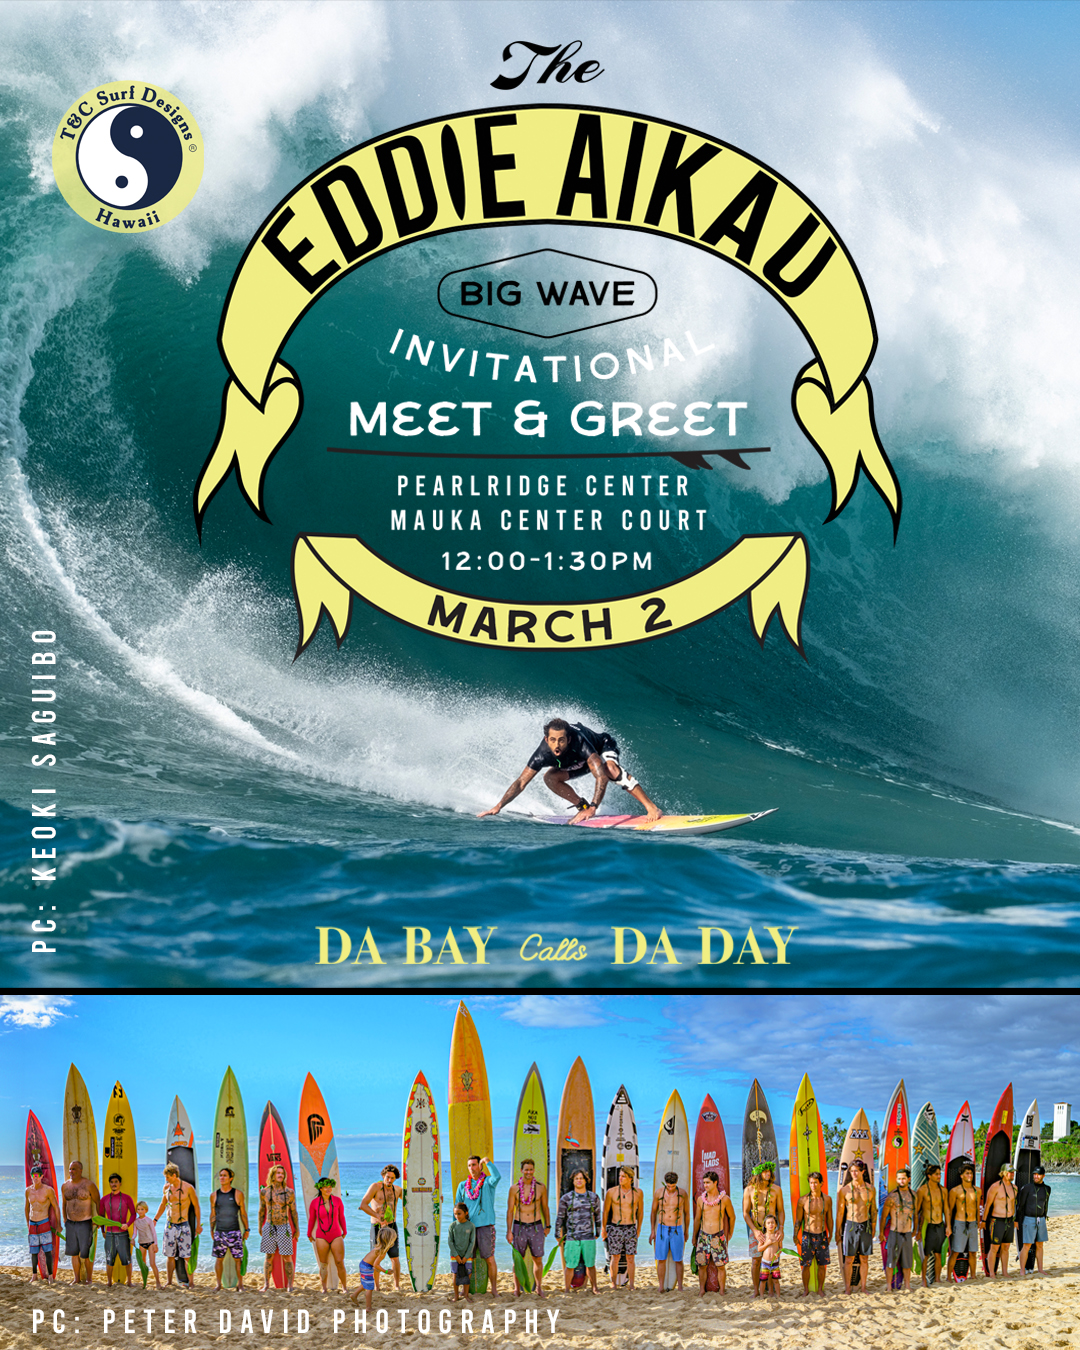 The Eddie Aikau Big Wave Invitational Meet & Greet! Pearlridge